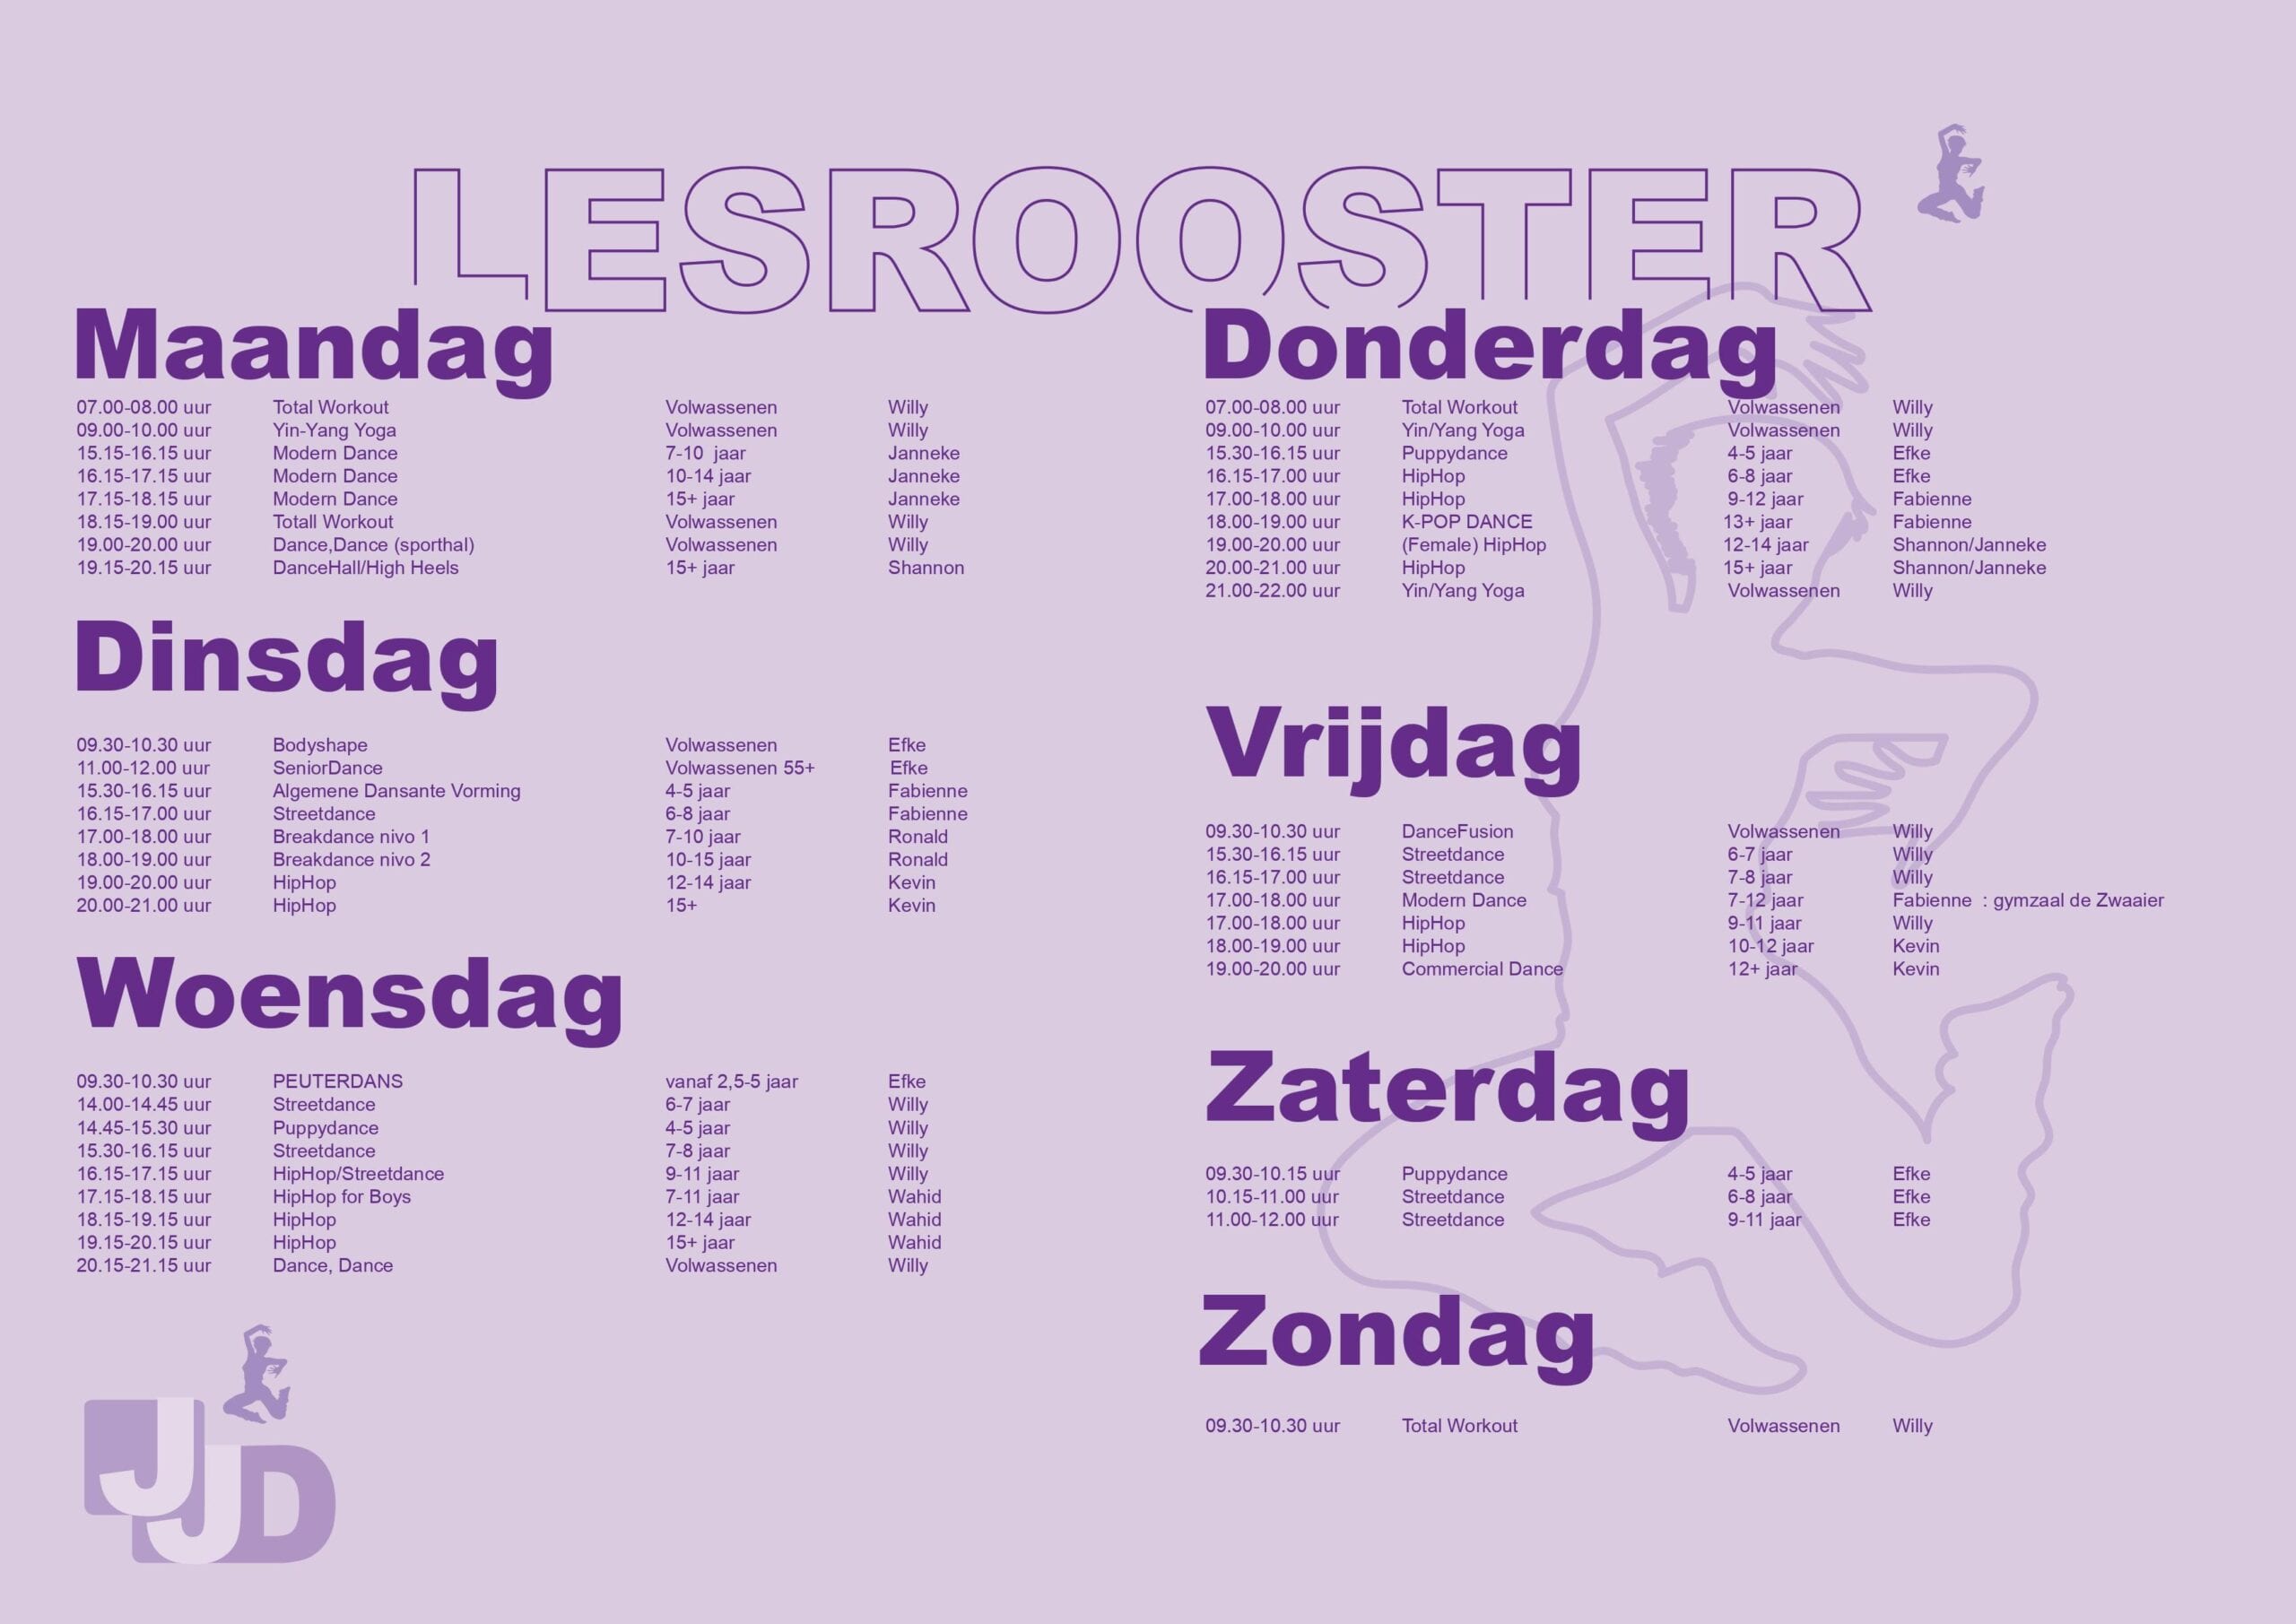 Lesrooster November 2020 - 2021